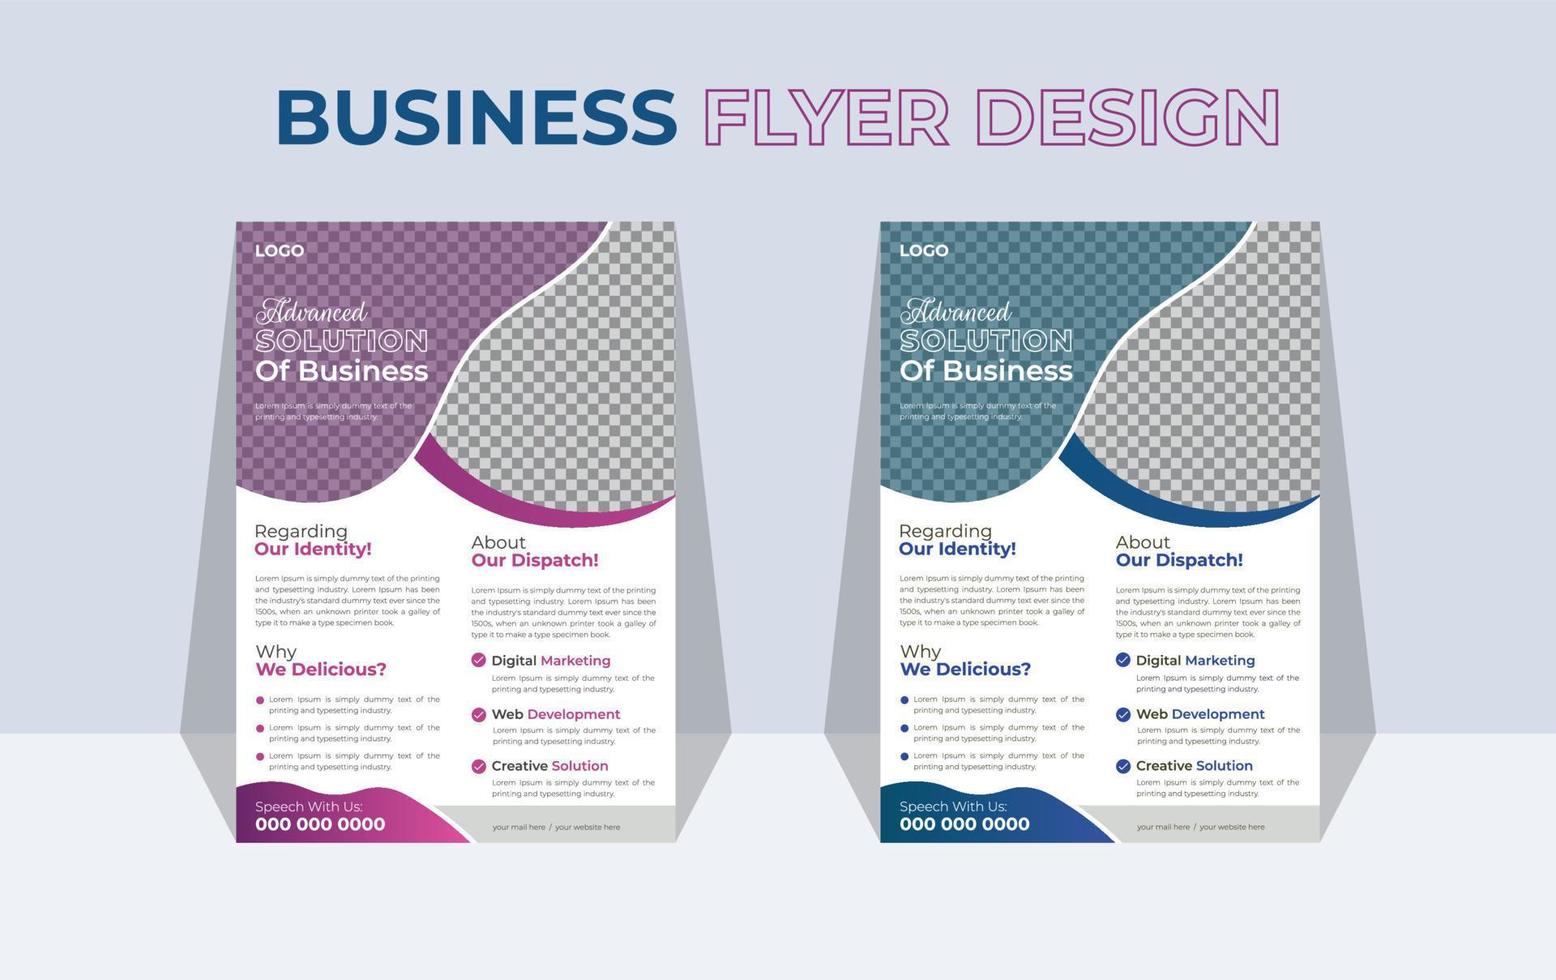 moderno negocio volantes o folleto cubrir diseño diseño modelo vector